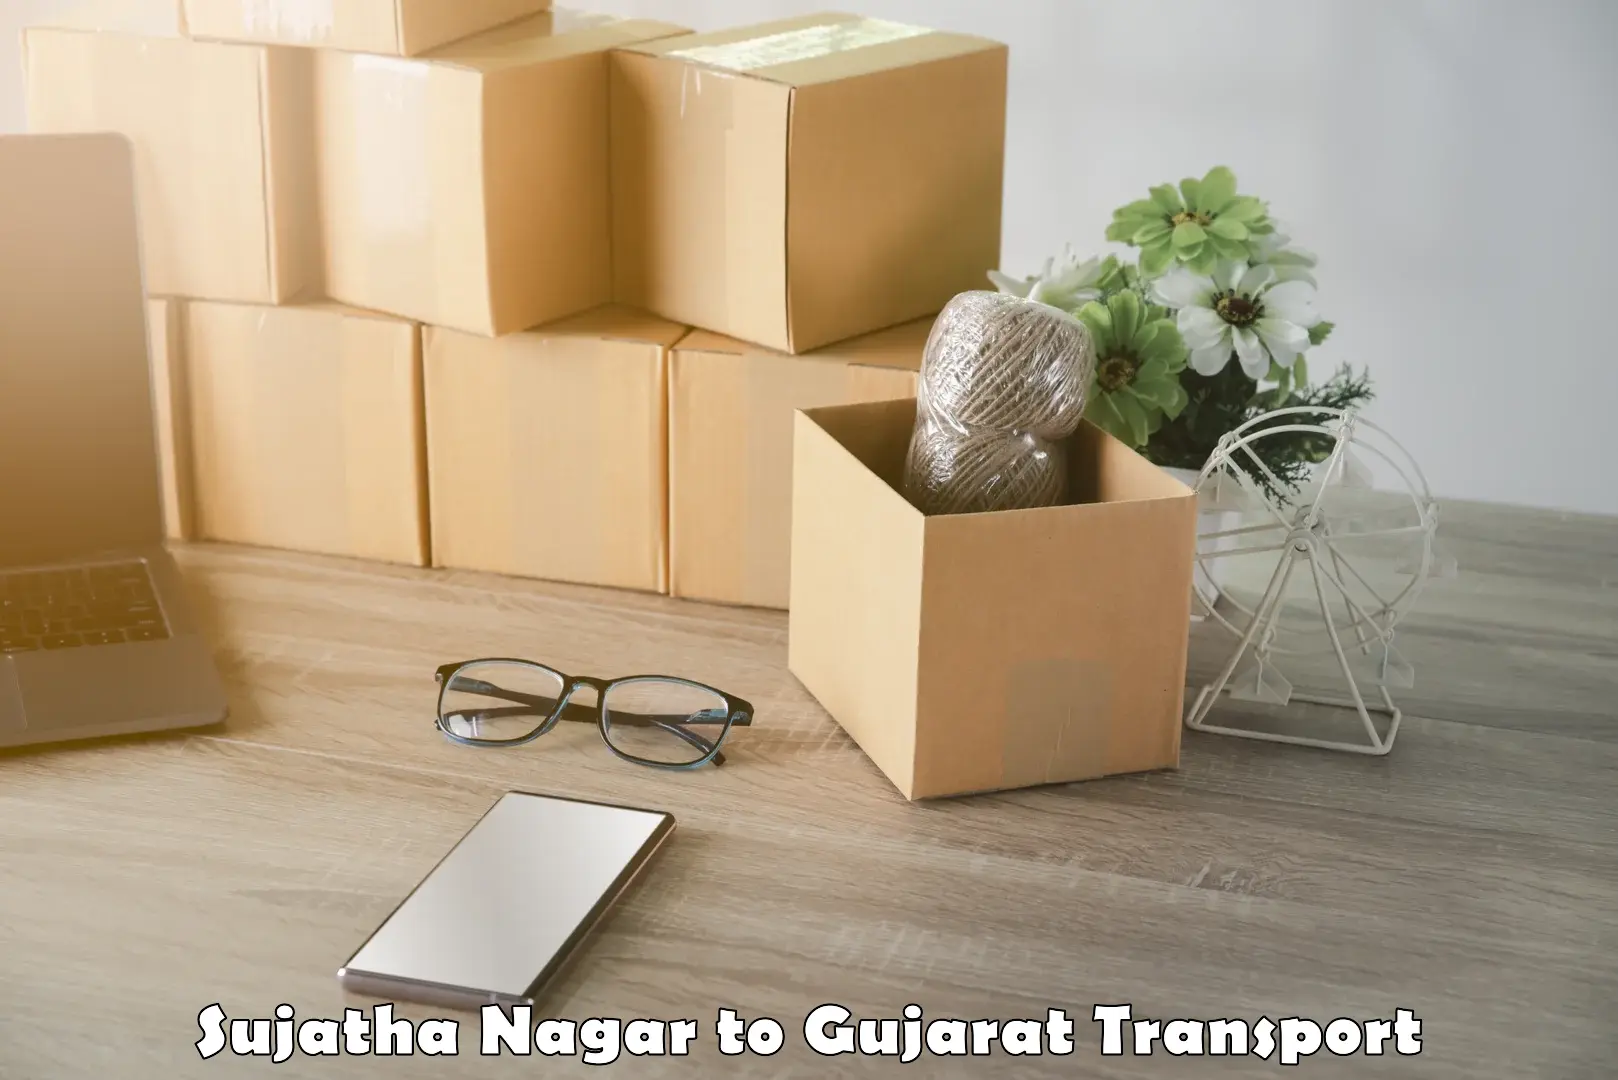 Delivery service Sujatha Nagar to Rapar